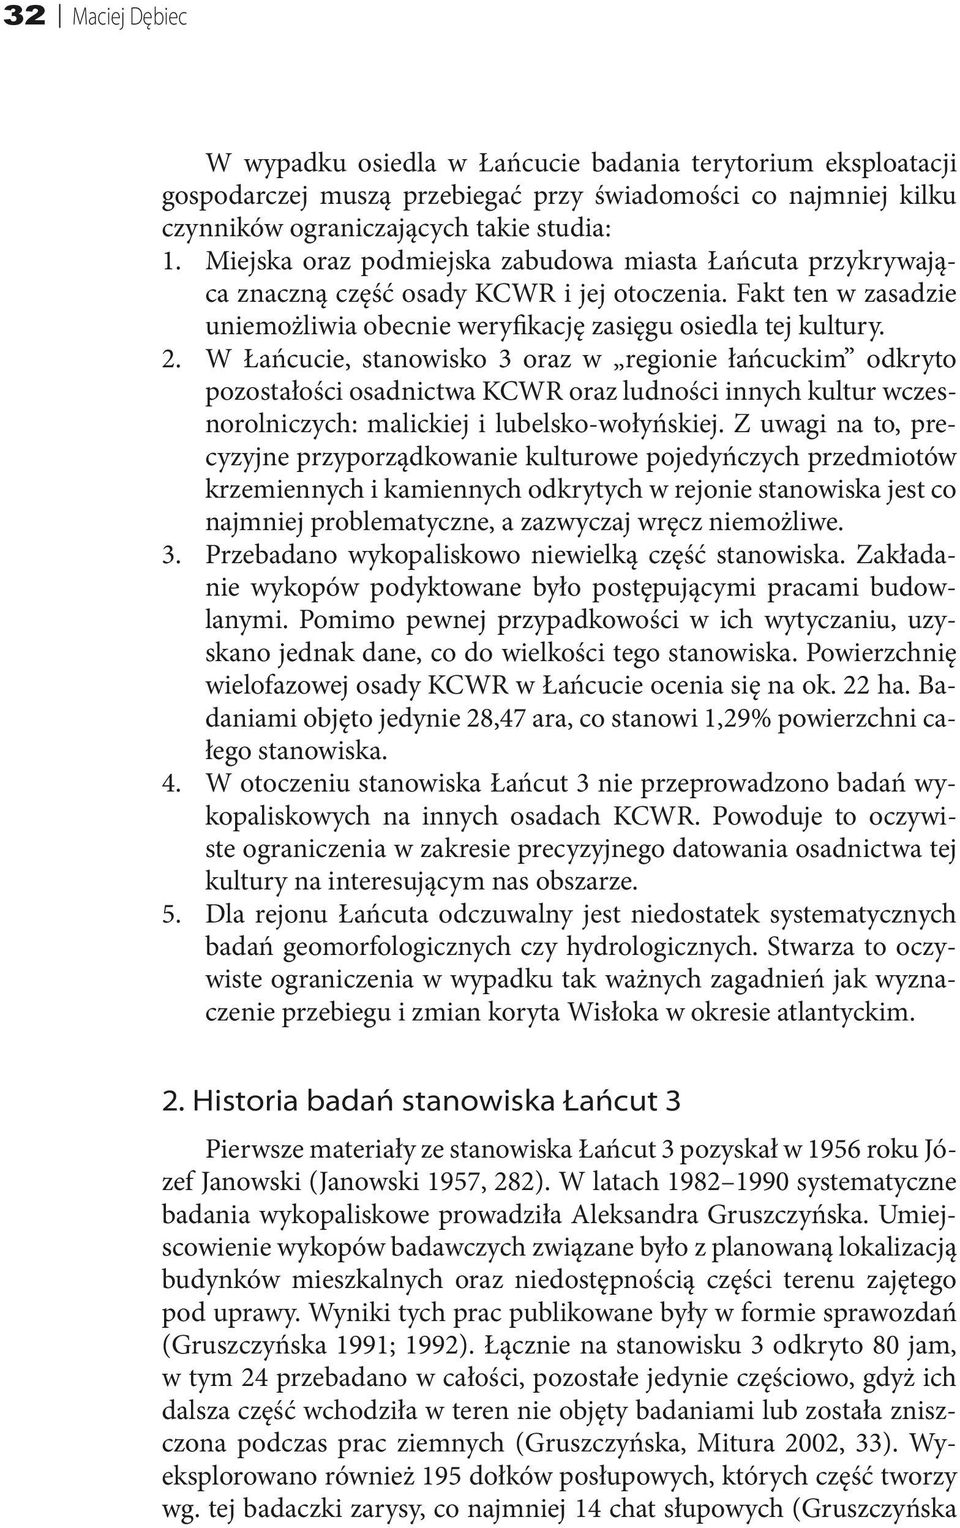 W Łańcucie, stanowisko 3 oraz w regionie łańcuckim odkryto pozostałości osadnictwa KCWR oraz ludności innych kultur wczesnorolniczych: malickiej i lubelsko-wołyńskiej.